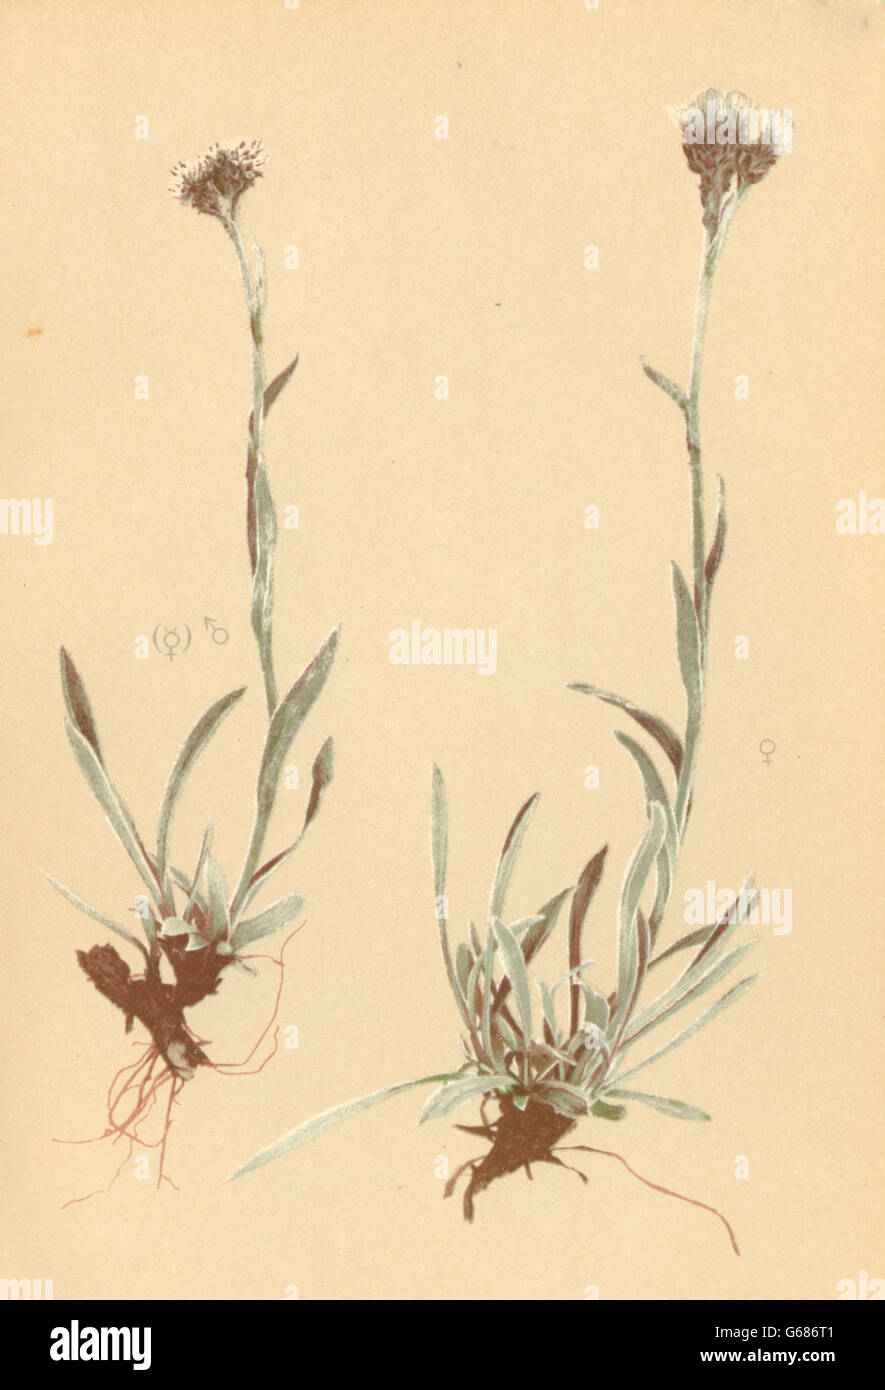 ALPINE FLOWERS: Antennaria carpatica Bl. F-Karpatisches Katzenpfotchen, 1897 Stock Photo